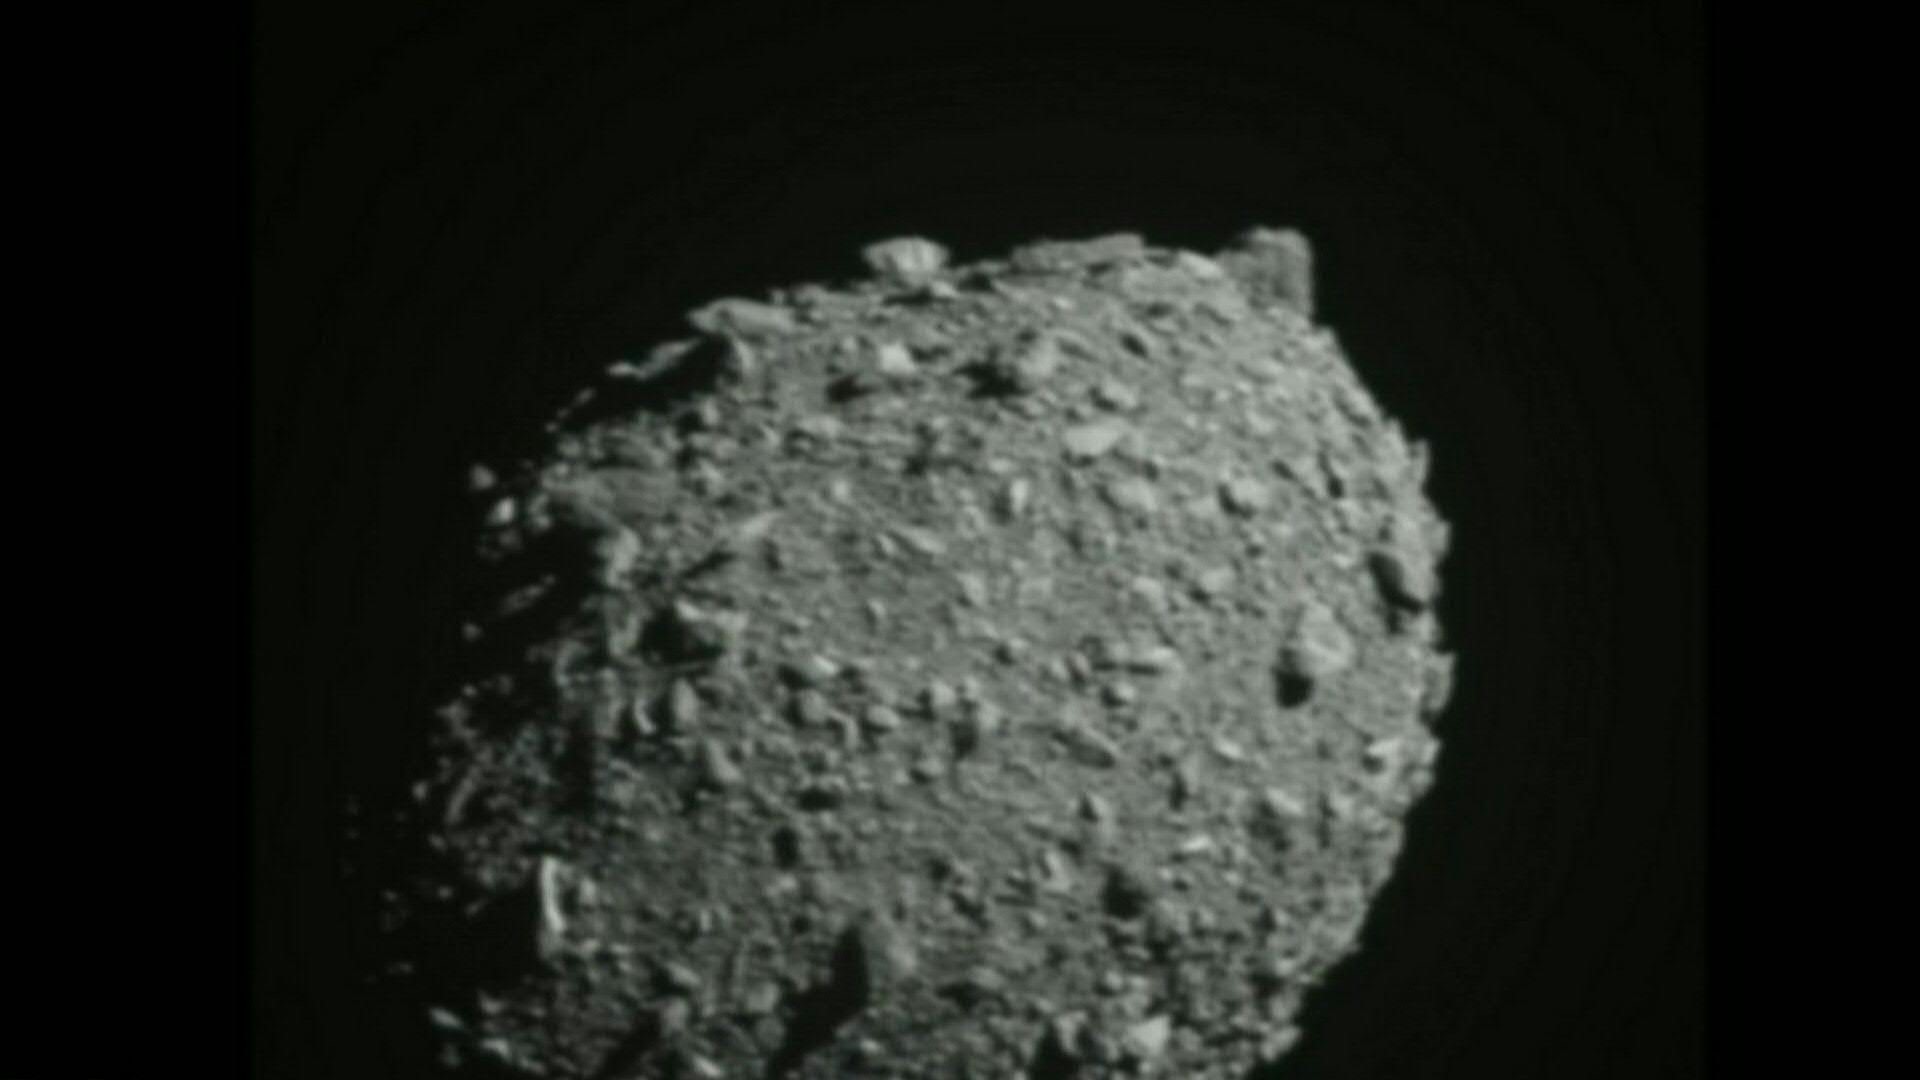 Los asteroides son objetos rocosos muy pequeños y de forma irregular